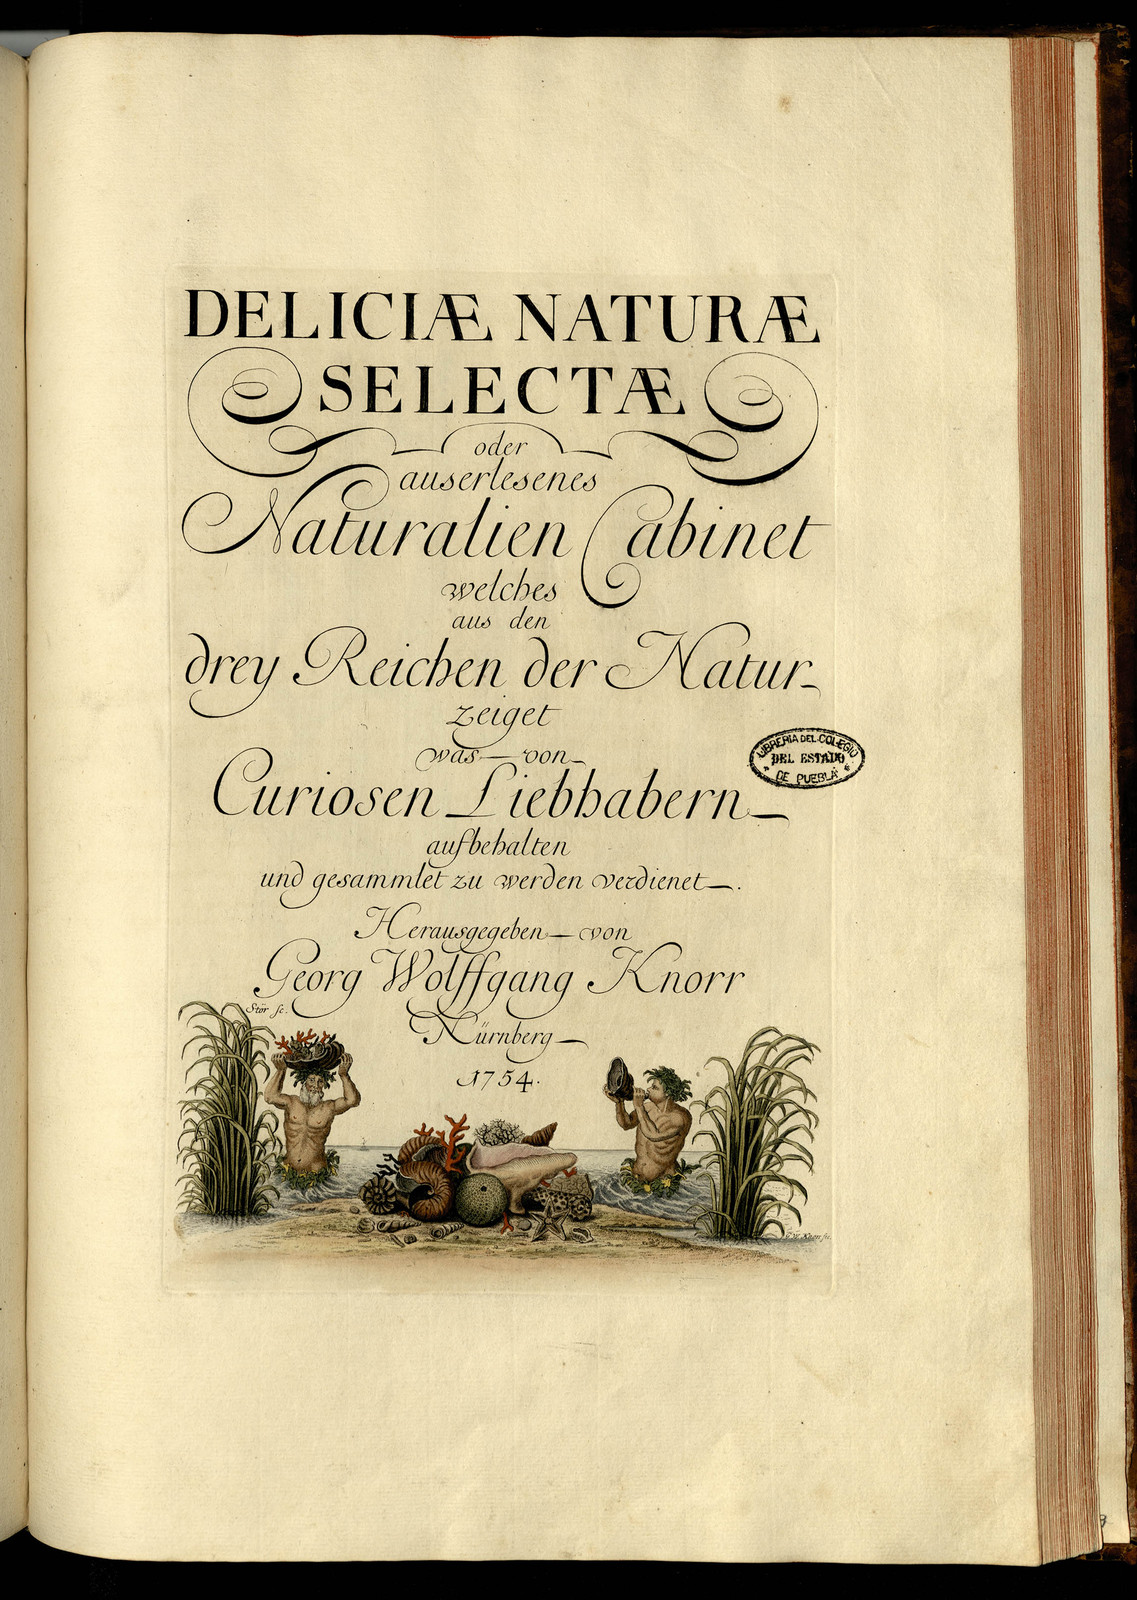 Deliciae naturae selectae oder auserlesenes Natüralien-Cabinet, welches aus den drey Reichen der Natur zeiget was von curiösen Liebhabern aufbehalten und gesammlet zu werden verdienet. Tomo I.